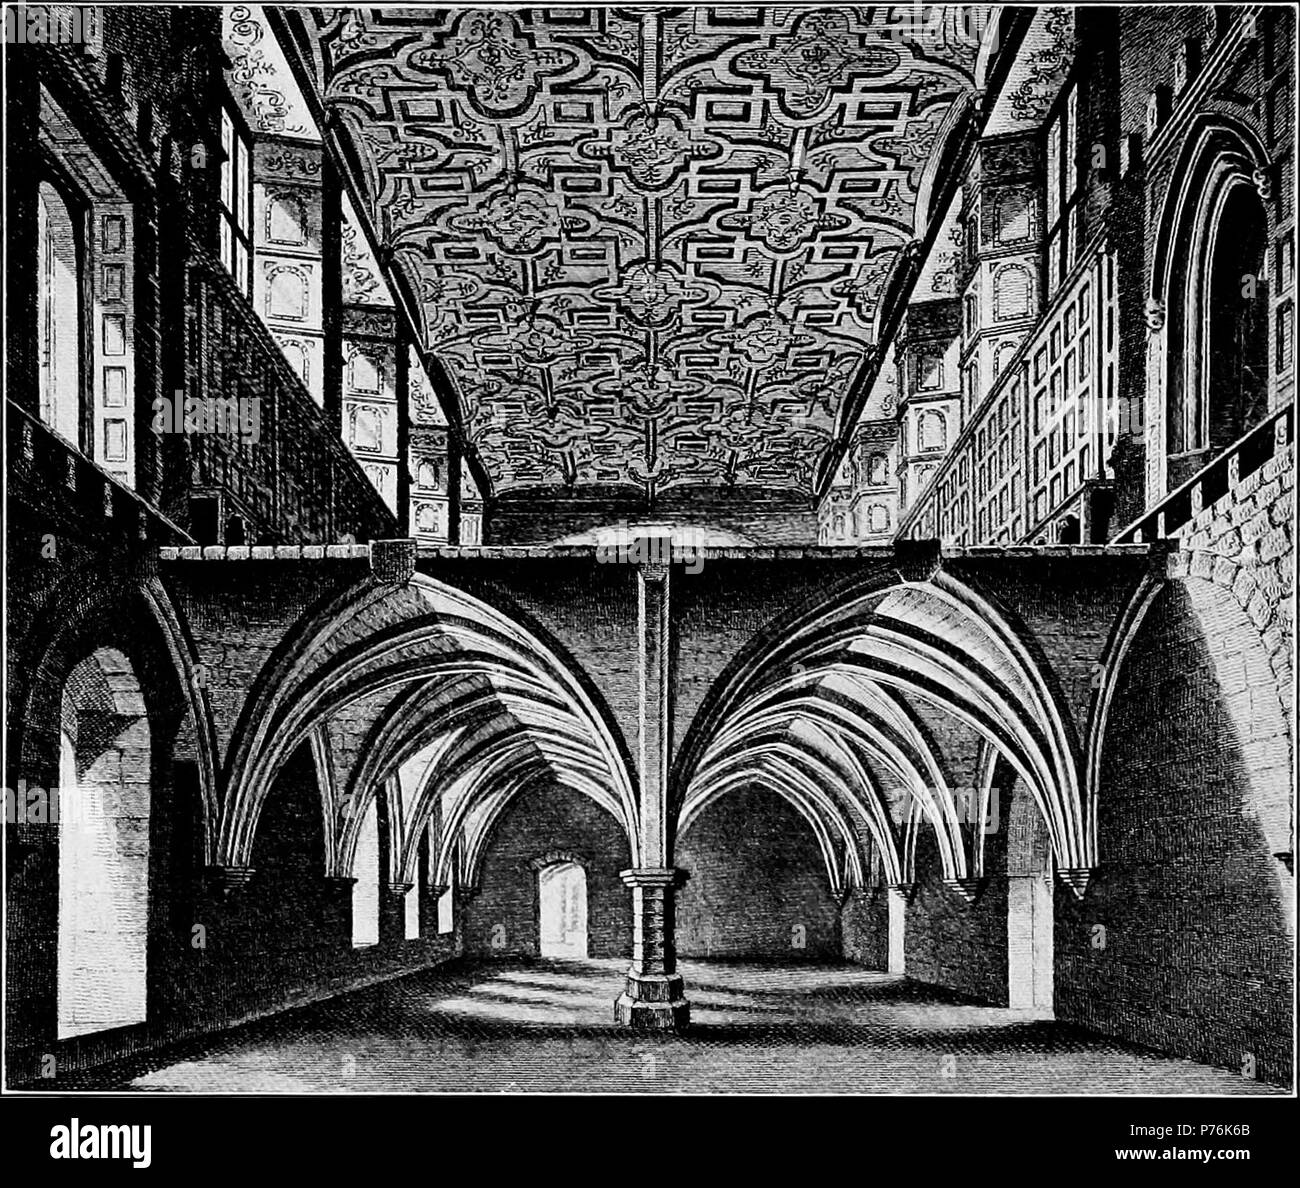 Englisch: Stuckdecken in das Kloster von St. Helen's, London. 1912 4 Elisabethanischen Personen - St. Helen's Decke Stockfoto